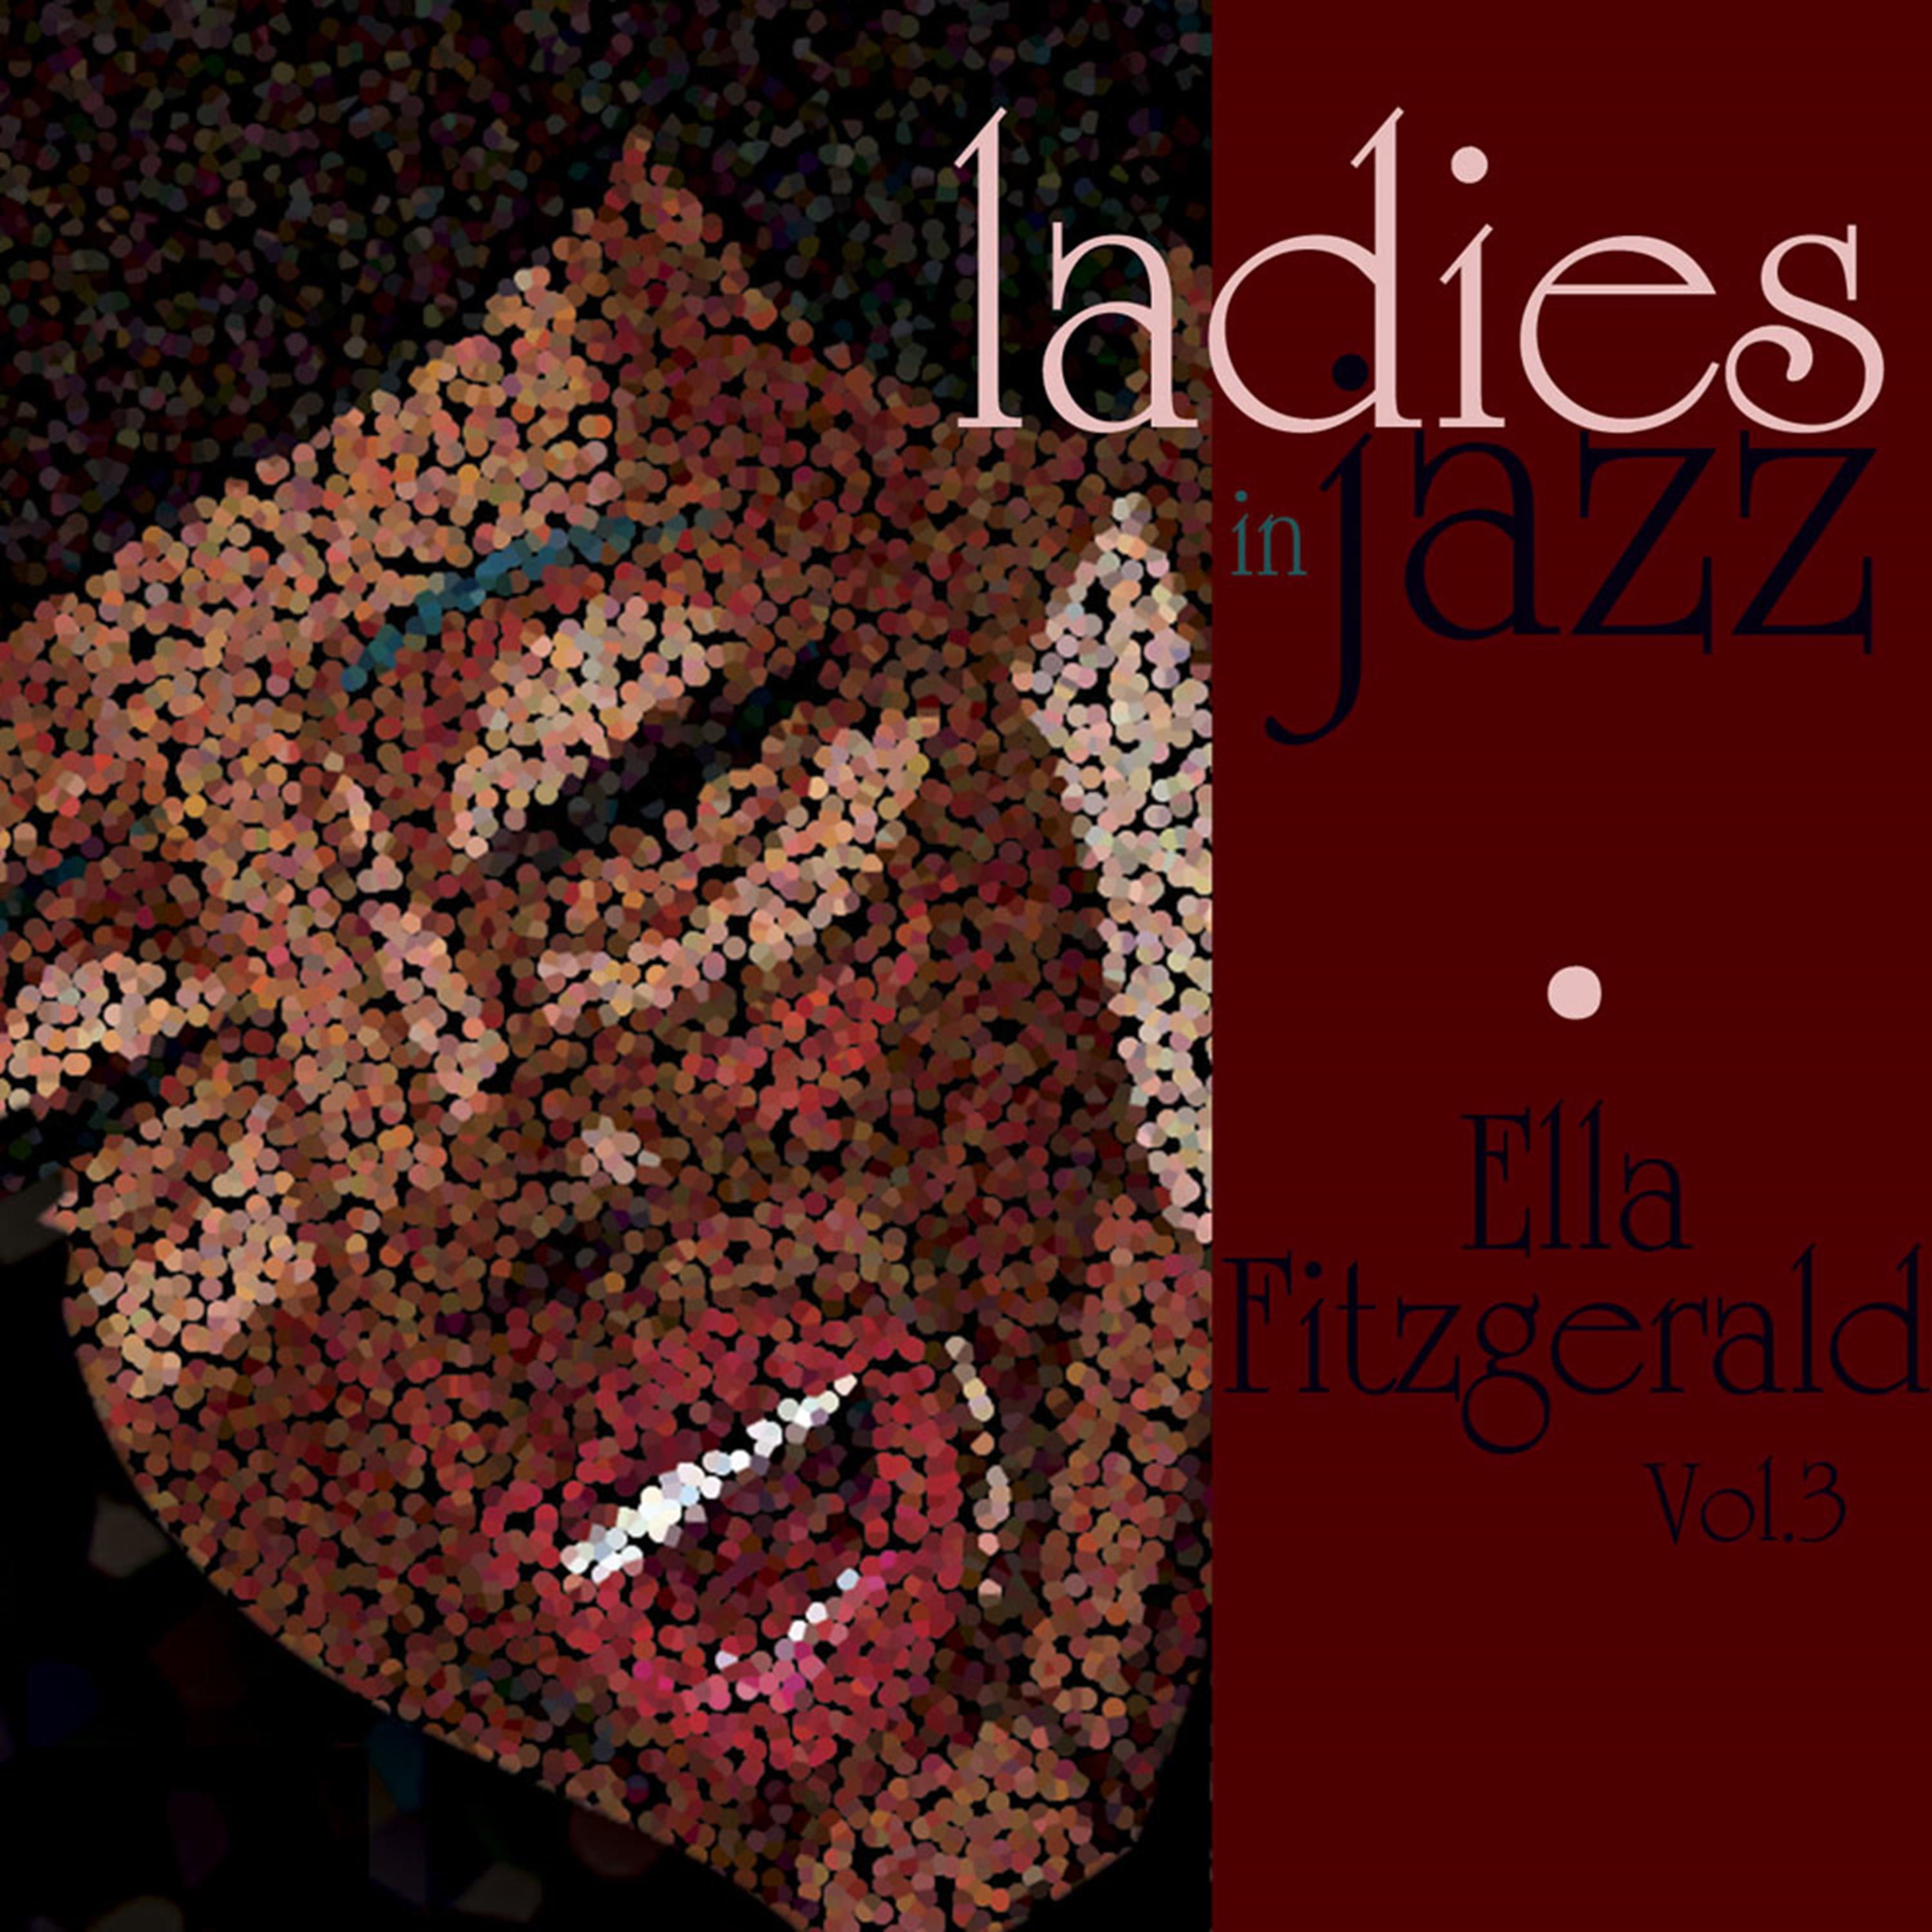 Ladies in Jazz - Ella Fitzgerald, Vol. 3